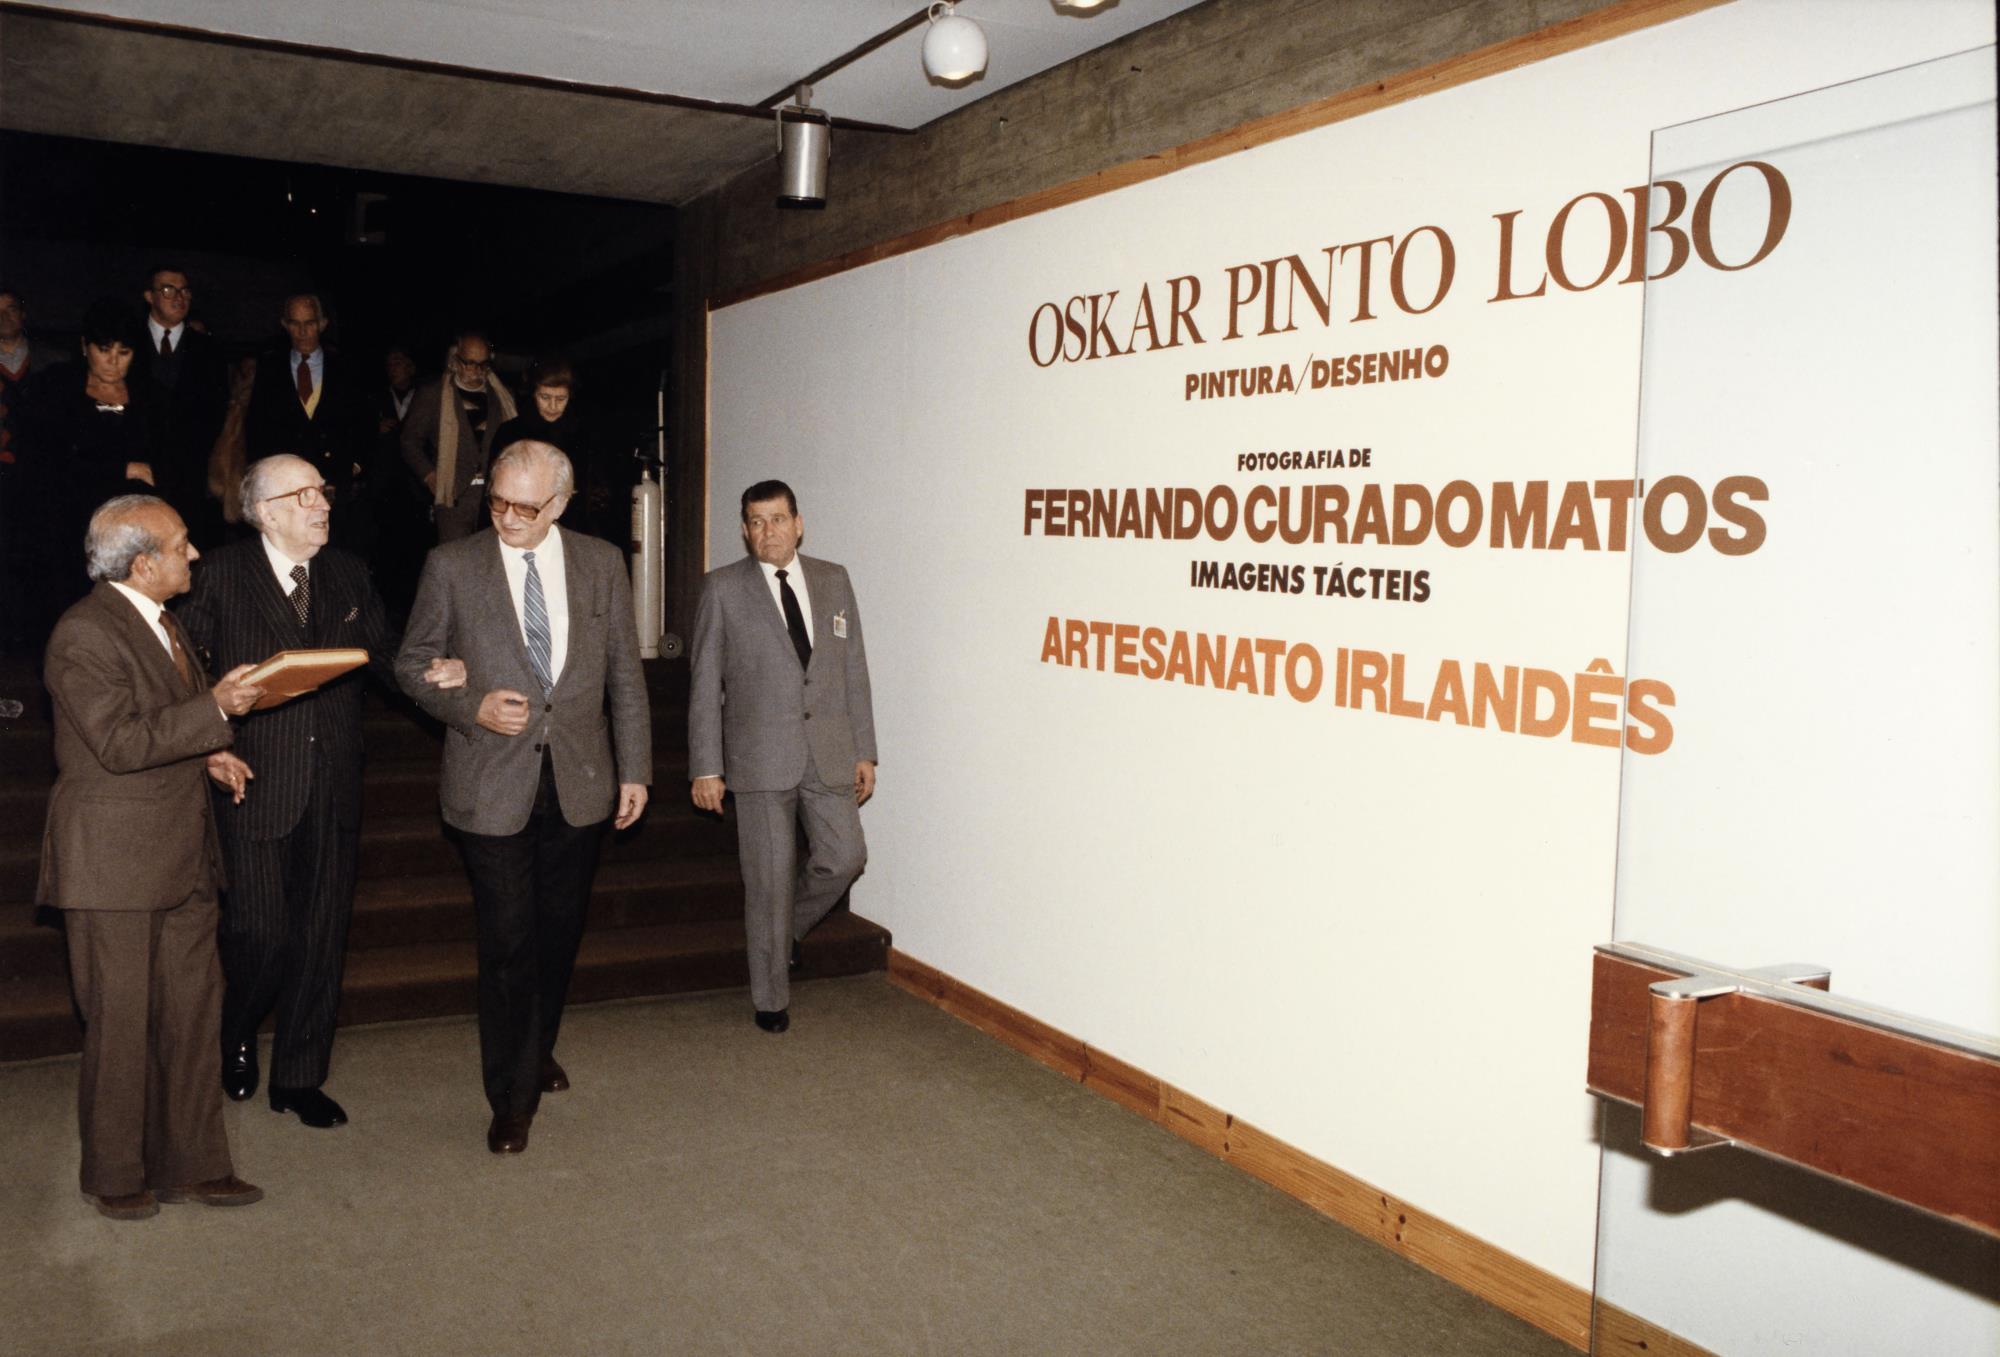 José de Azeredo Perdigão, presidente da Fundação Calouste Gulbenkian, acompanhado por José Sommer Ribeiro, Diretor do Serviço de Exposições e Museografia, e do artista Oskar Pinto Lobo.